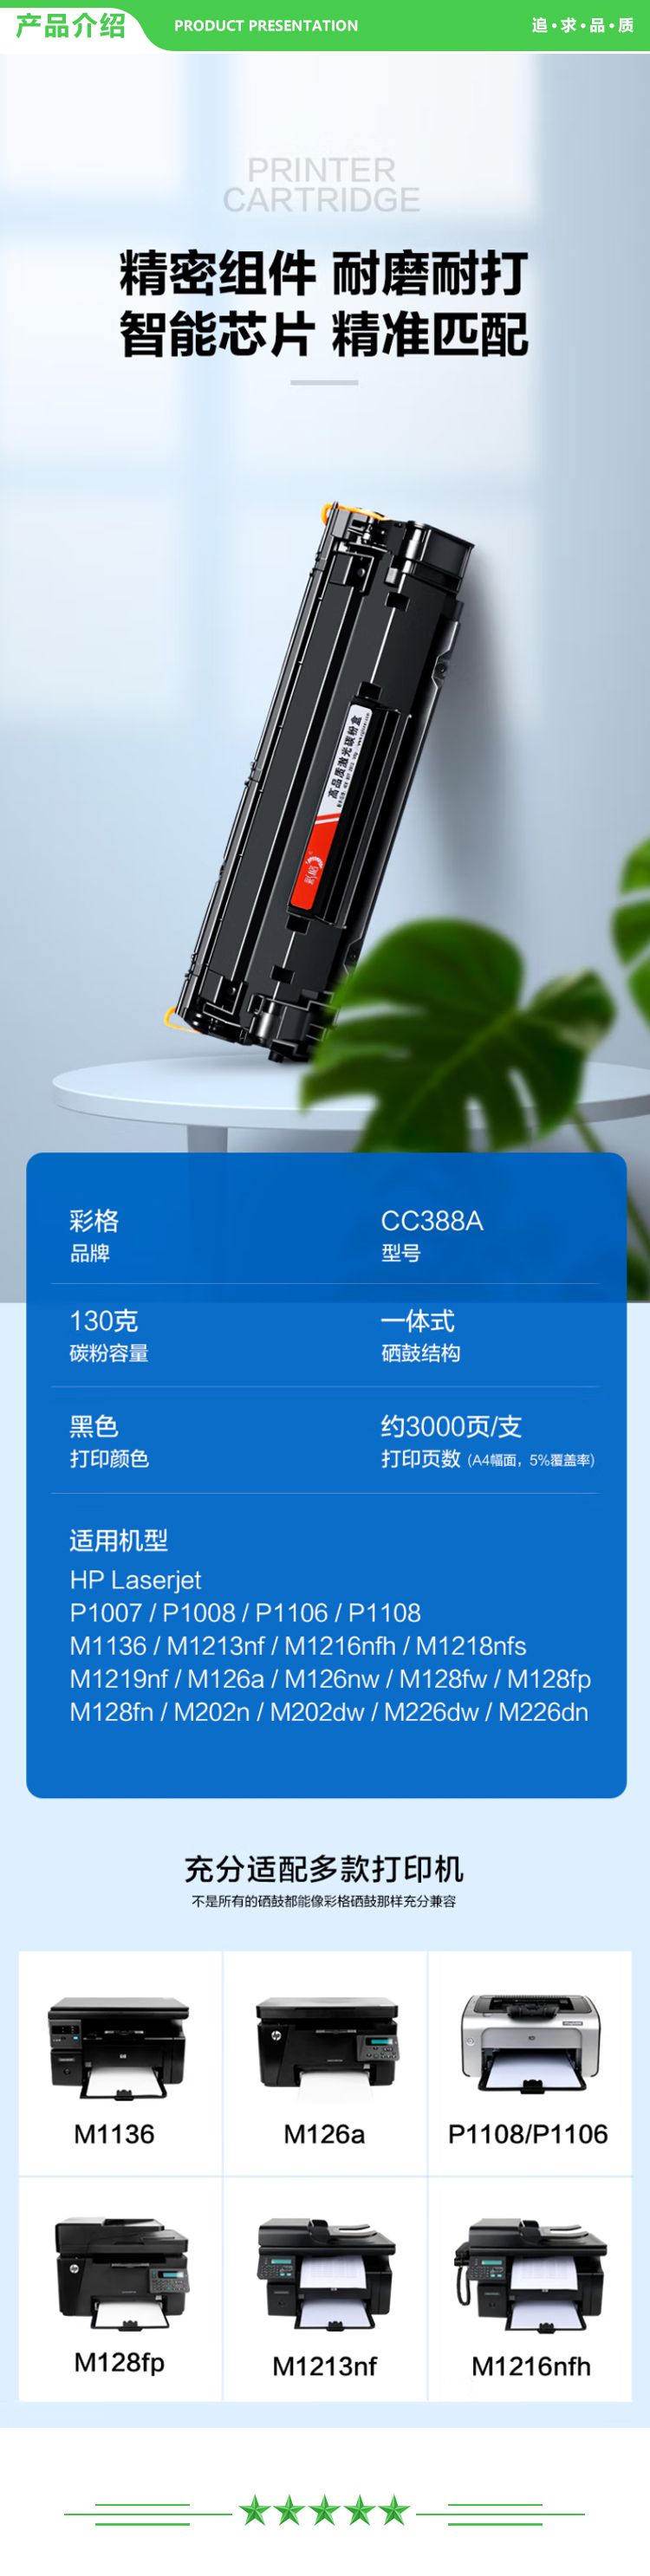 彩格 CC388A大容量硒鼓-2支装 m1136硒鼓适用惠普hp m126a p1106 p1108 p1107 m1213 m1216 m202n m128fn打印机硒鼓墨盒.jpg